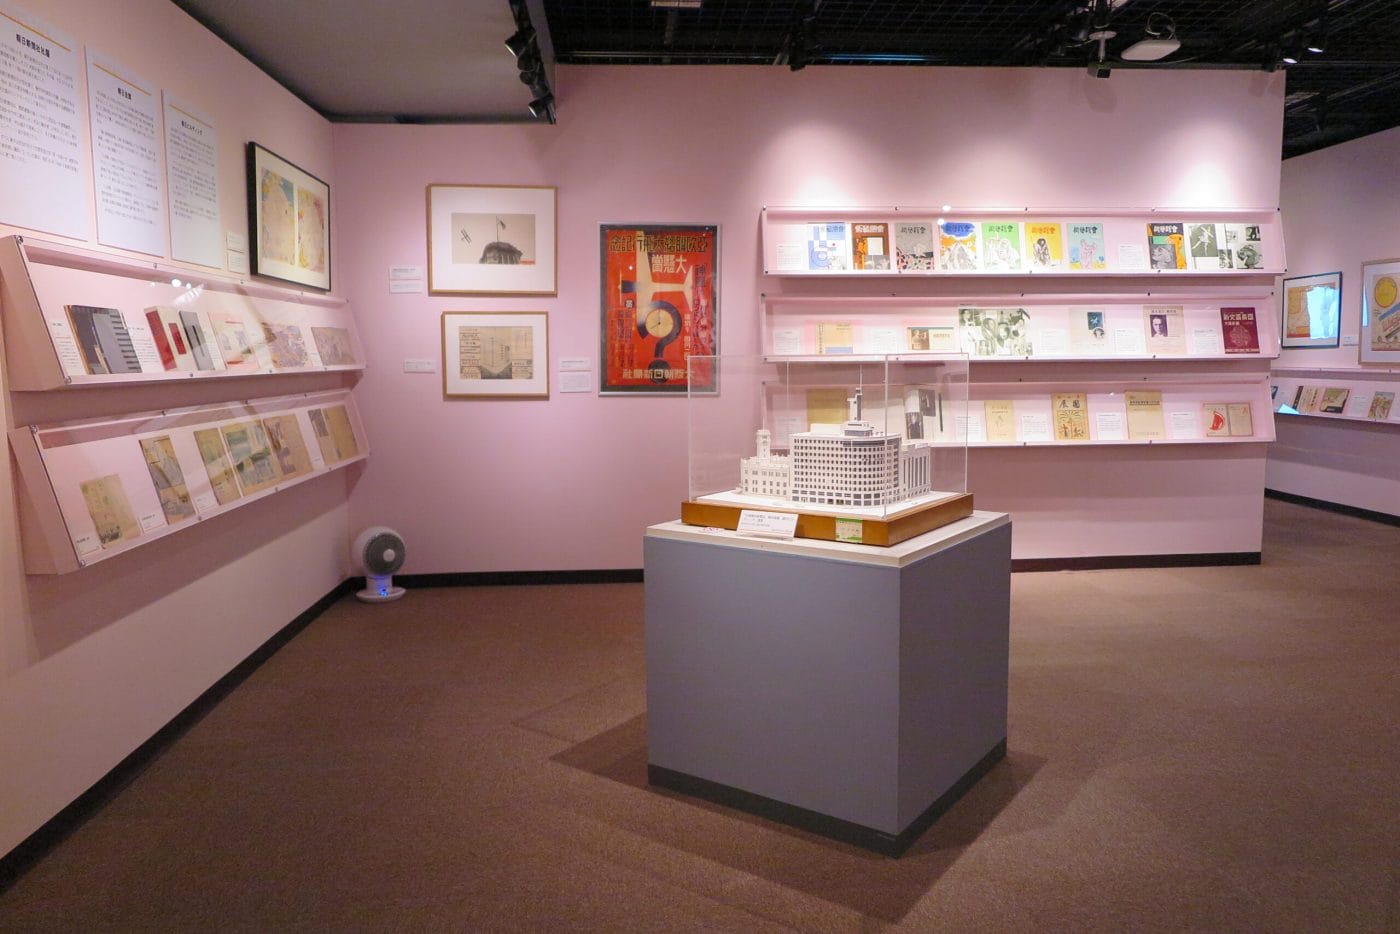 文化拠点として発展を遂げてきた中之島を検証する「モダン中之島コレクション 　“大大阪”時代の文化芸術発信センター」が、大阪大学総合学術博物館で開催中。